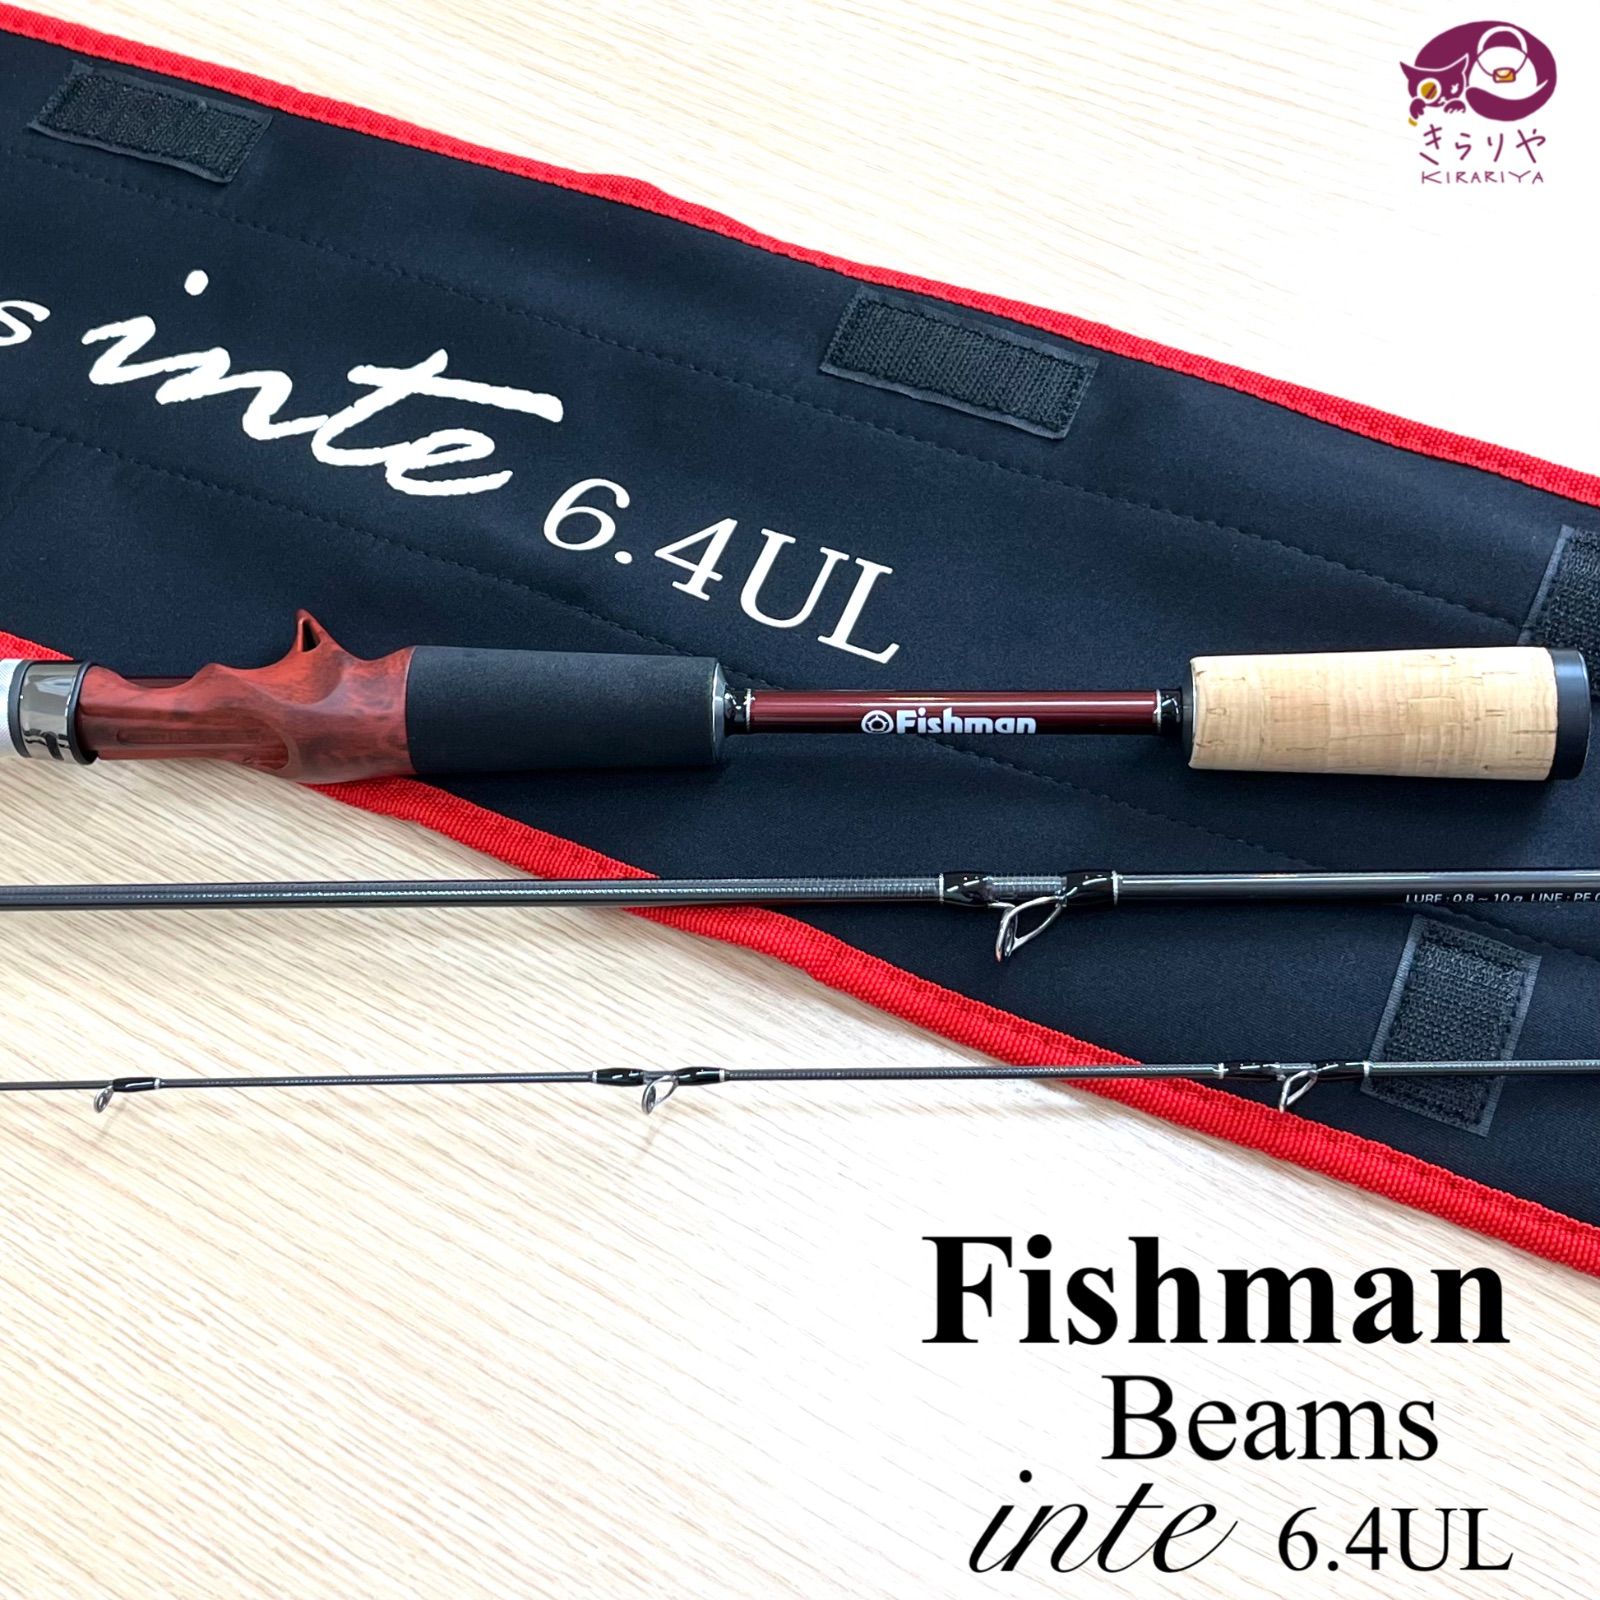 Fishman フィッシュマン Beams ビームス インテ 6.4UL 竿 全長193